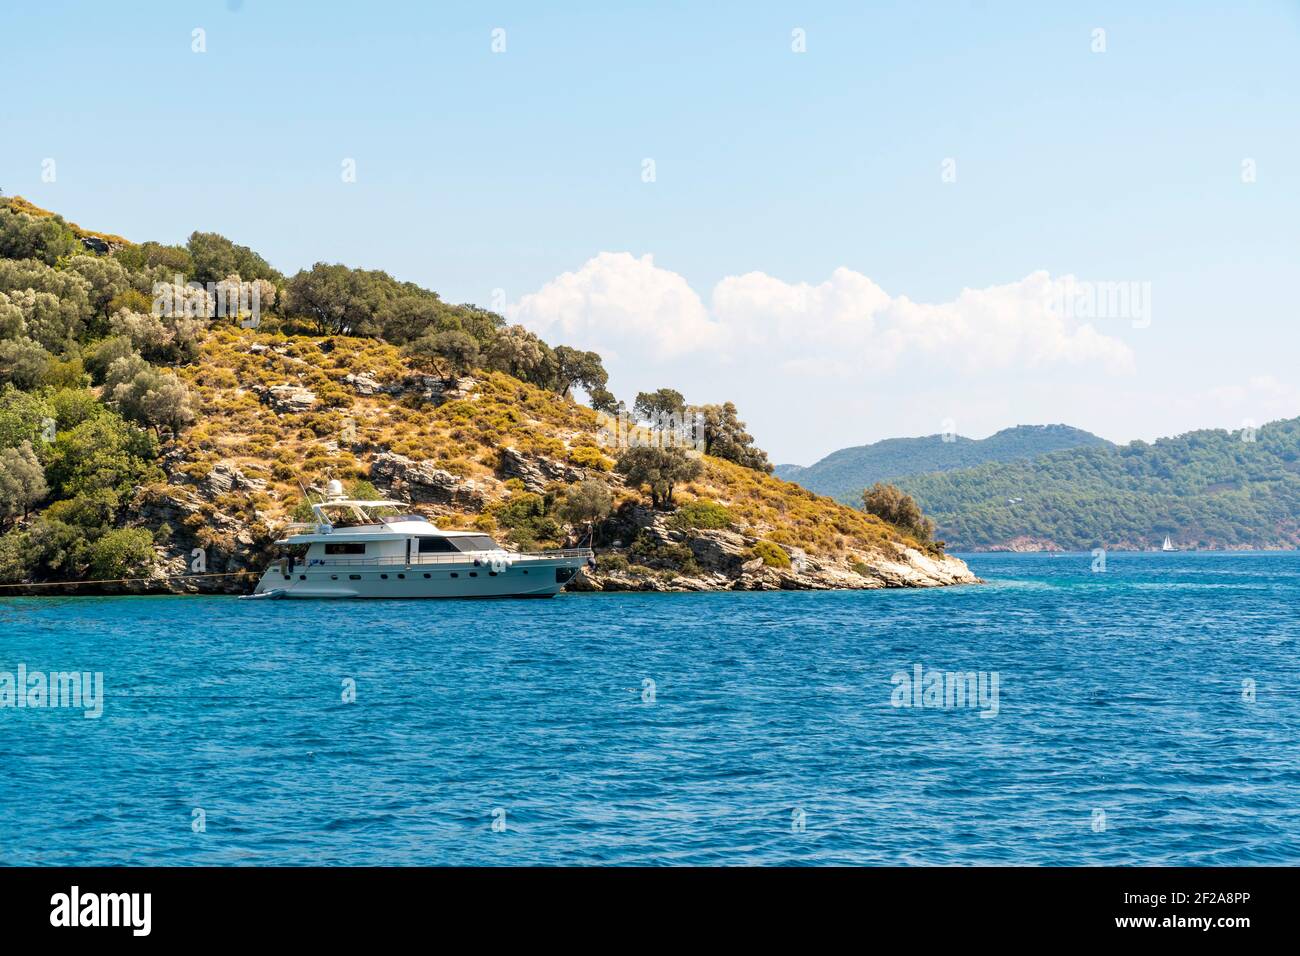 Concept d'été : bateau à yacht blanc de luxe ancré à la poupe dans une baie avec des eaux bleu turquoise. Vue de la terre avec arbres verts et mer en arrière-plan Banque D'Images